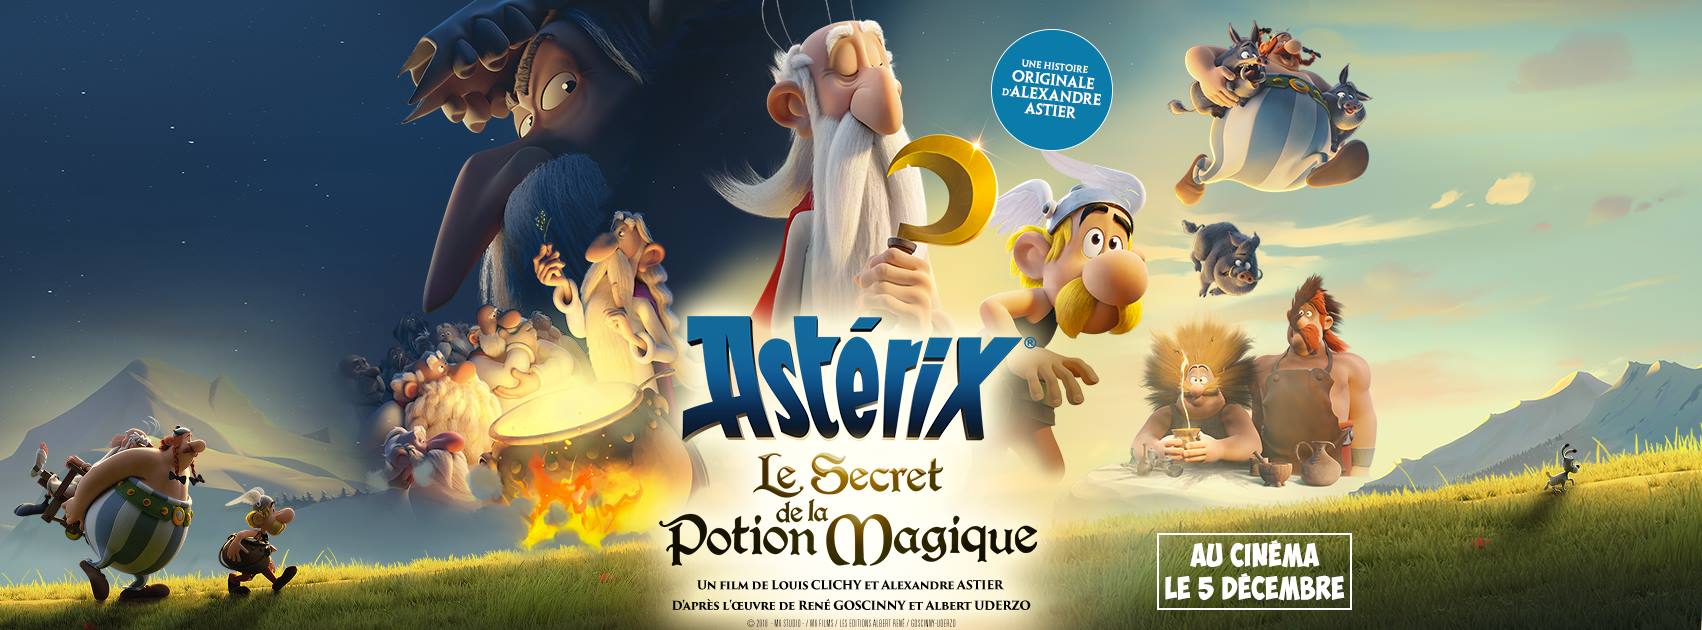 Critique « Astérix, Le Secret de la Potion Magique » (2018) - On